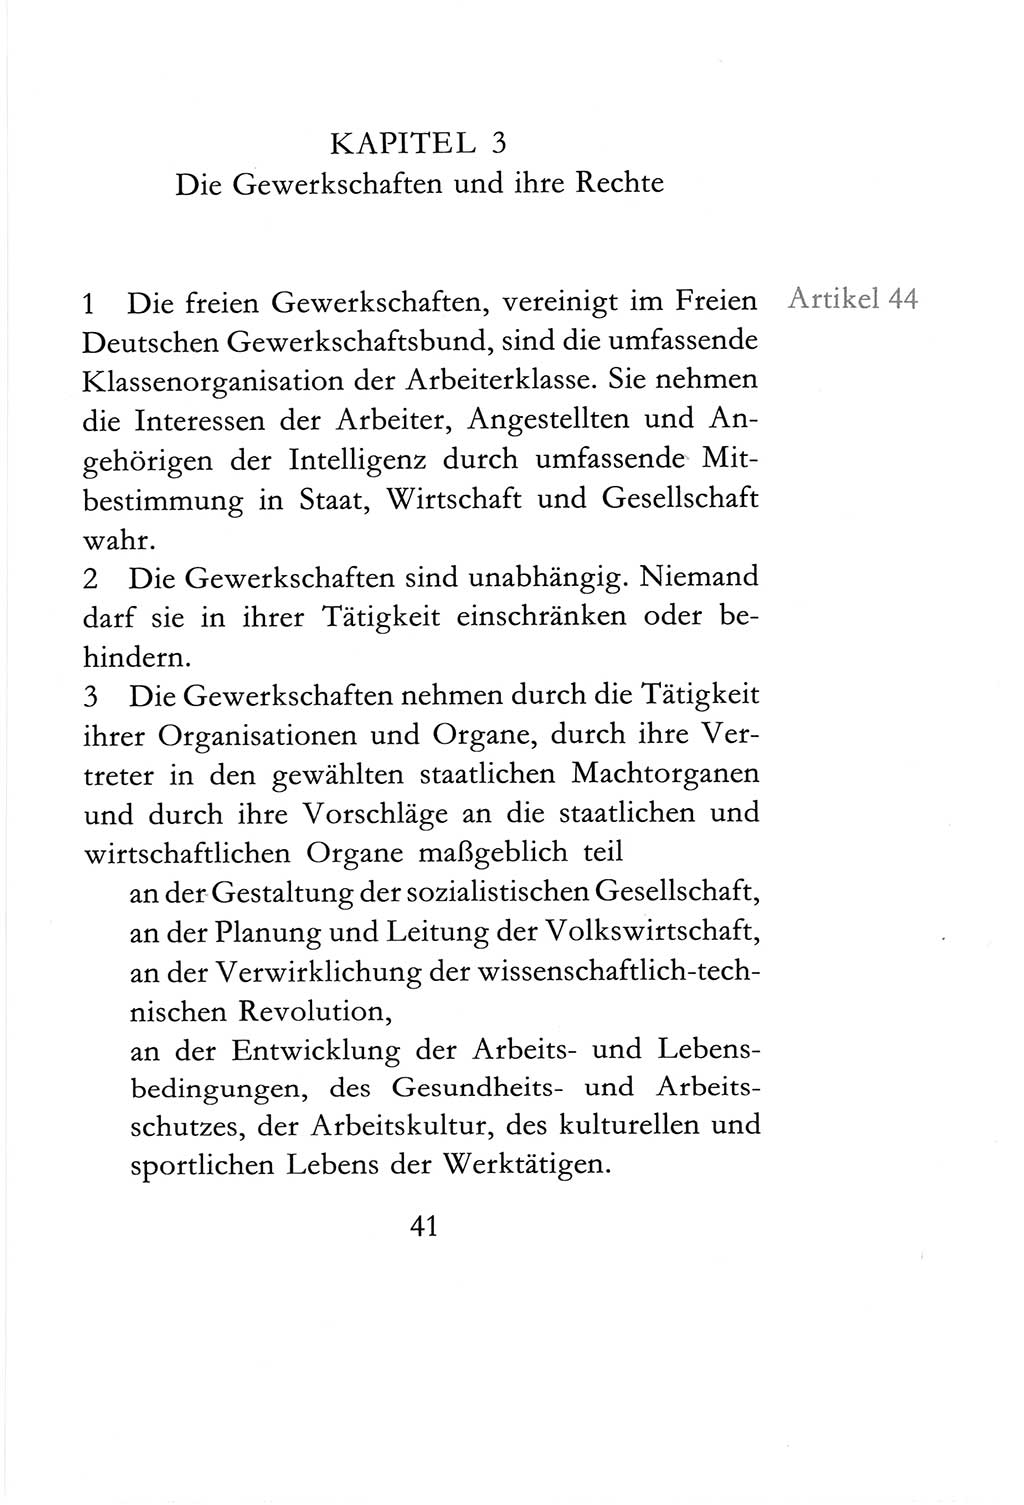 Verfassung der Deutschen Demokratischen Republik (DDR) vom 6. April 1968, Seite 41 (Verf. DDR 1968, S. 41)